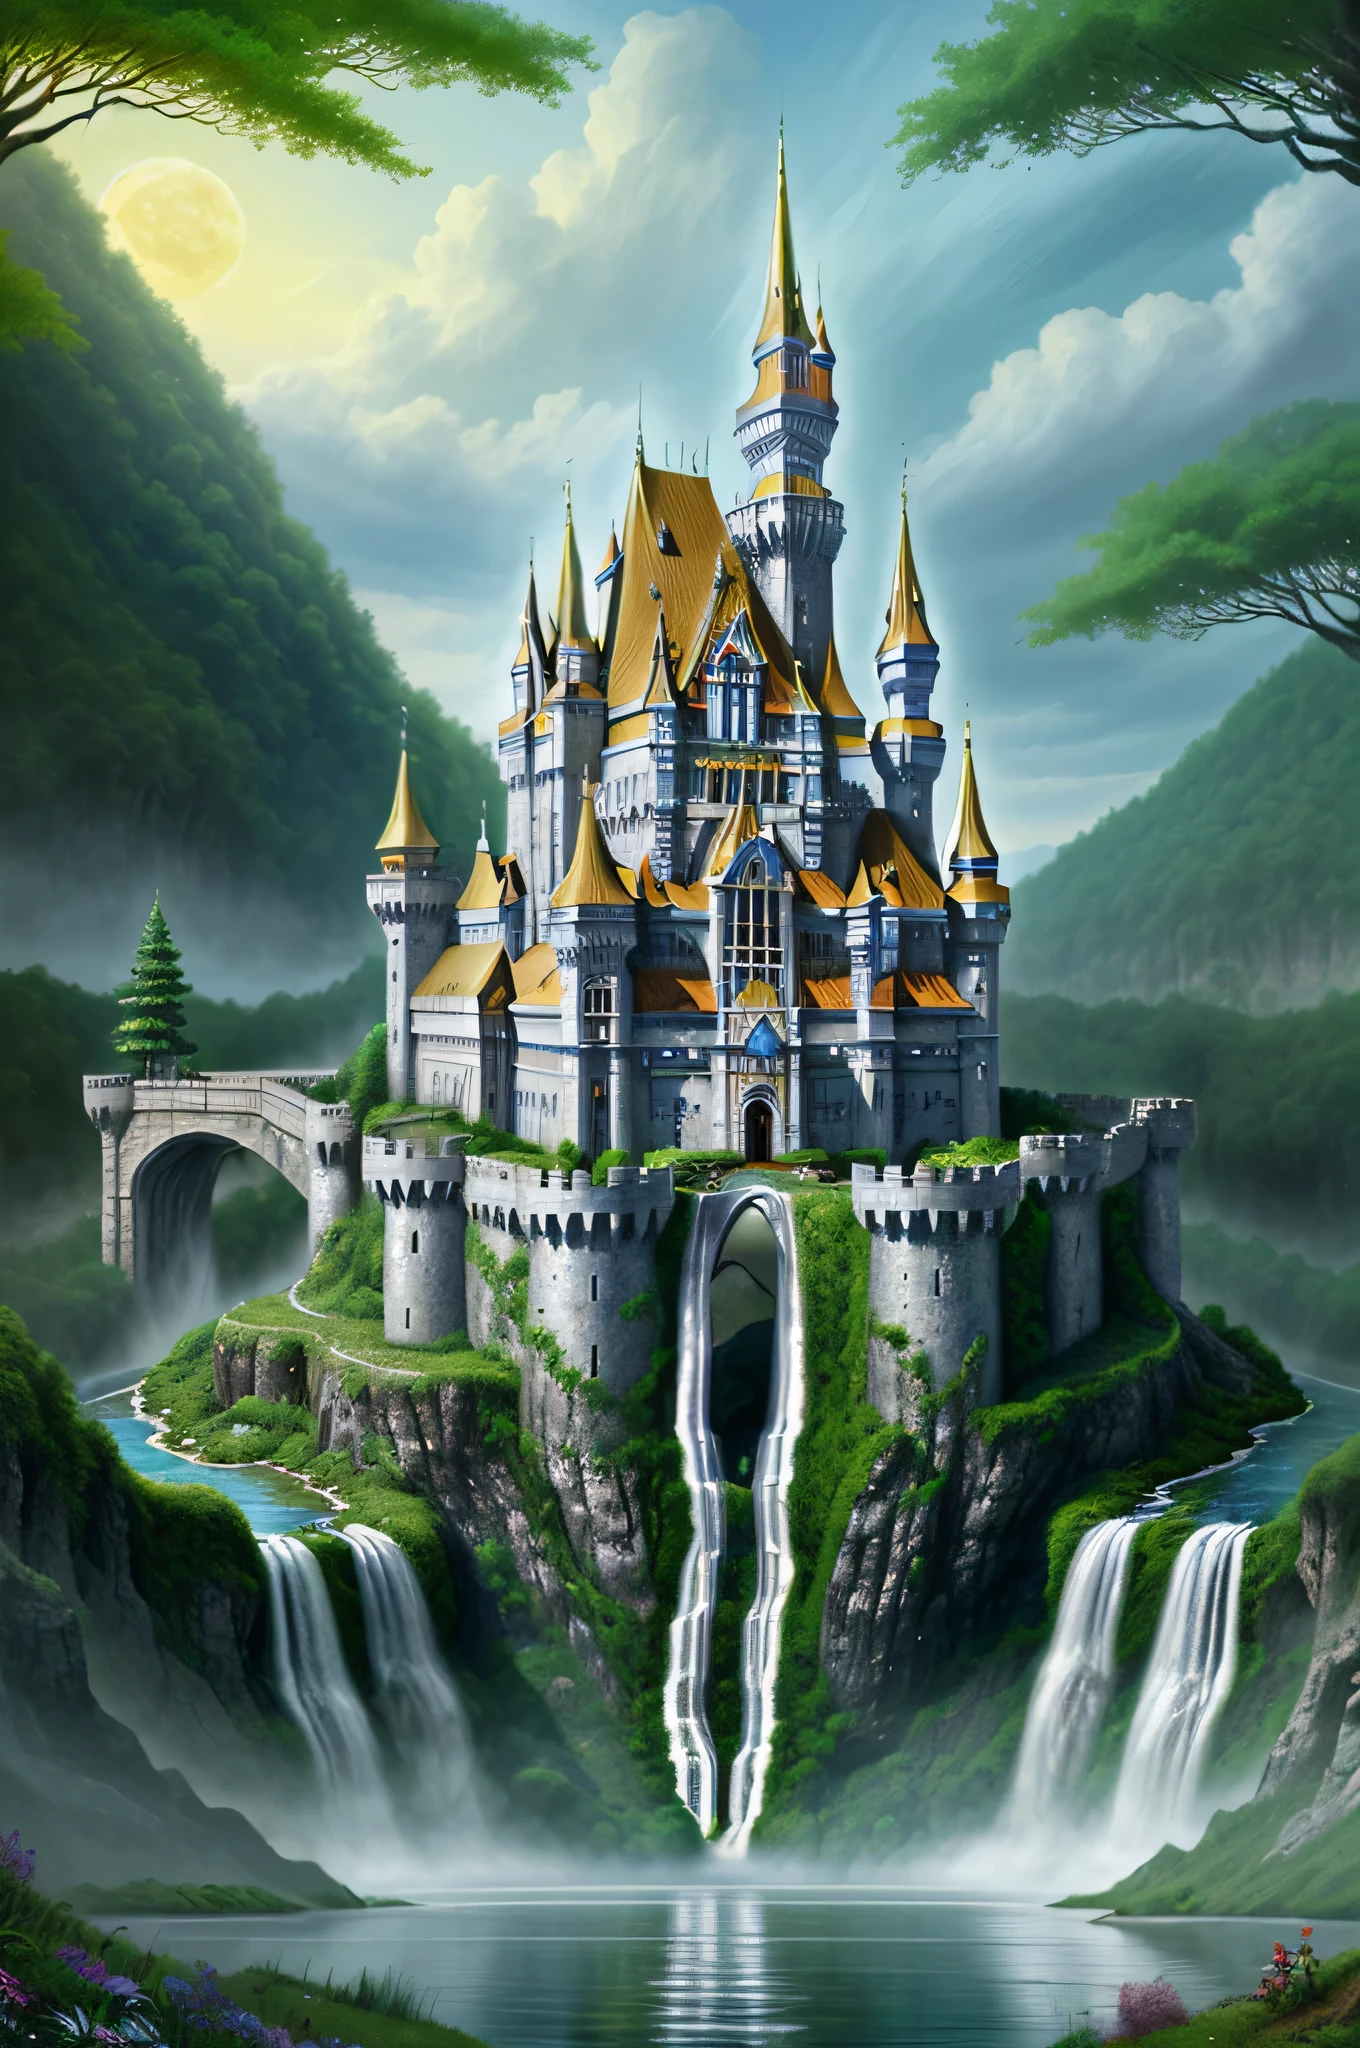 Riesiges Fantasy-Elfenschloss, Der Silberpalast, waterfall, Der Wald, neues Weltwunder, Meisterwerk, gute Qualität,